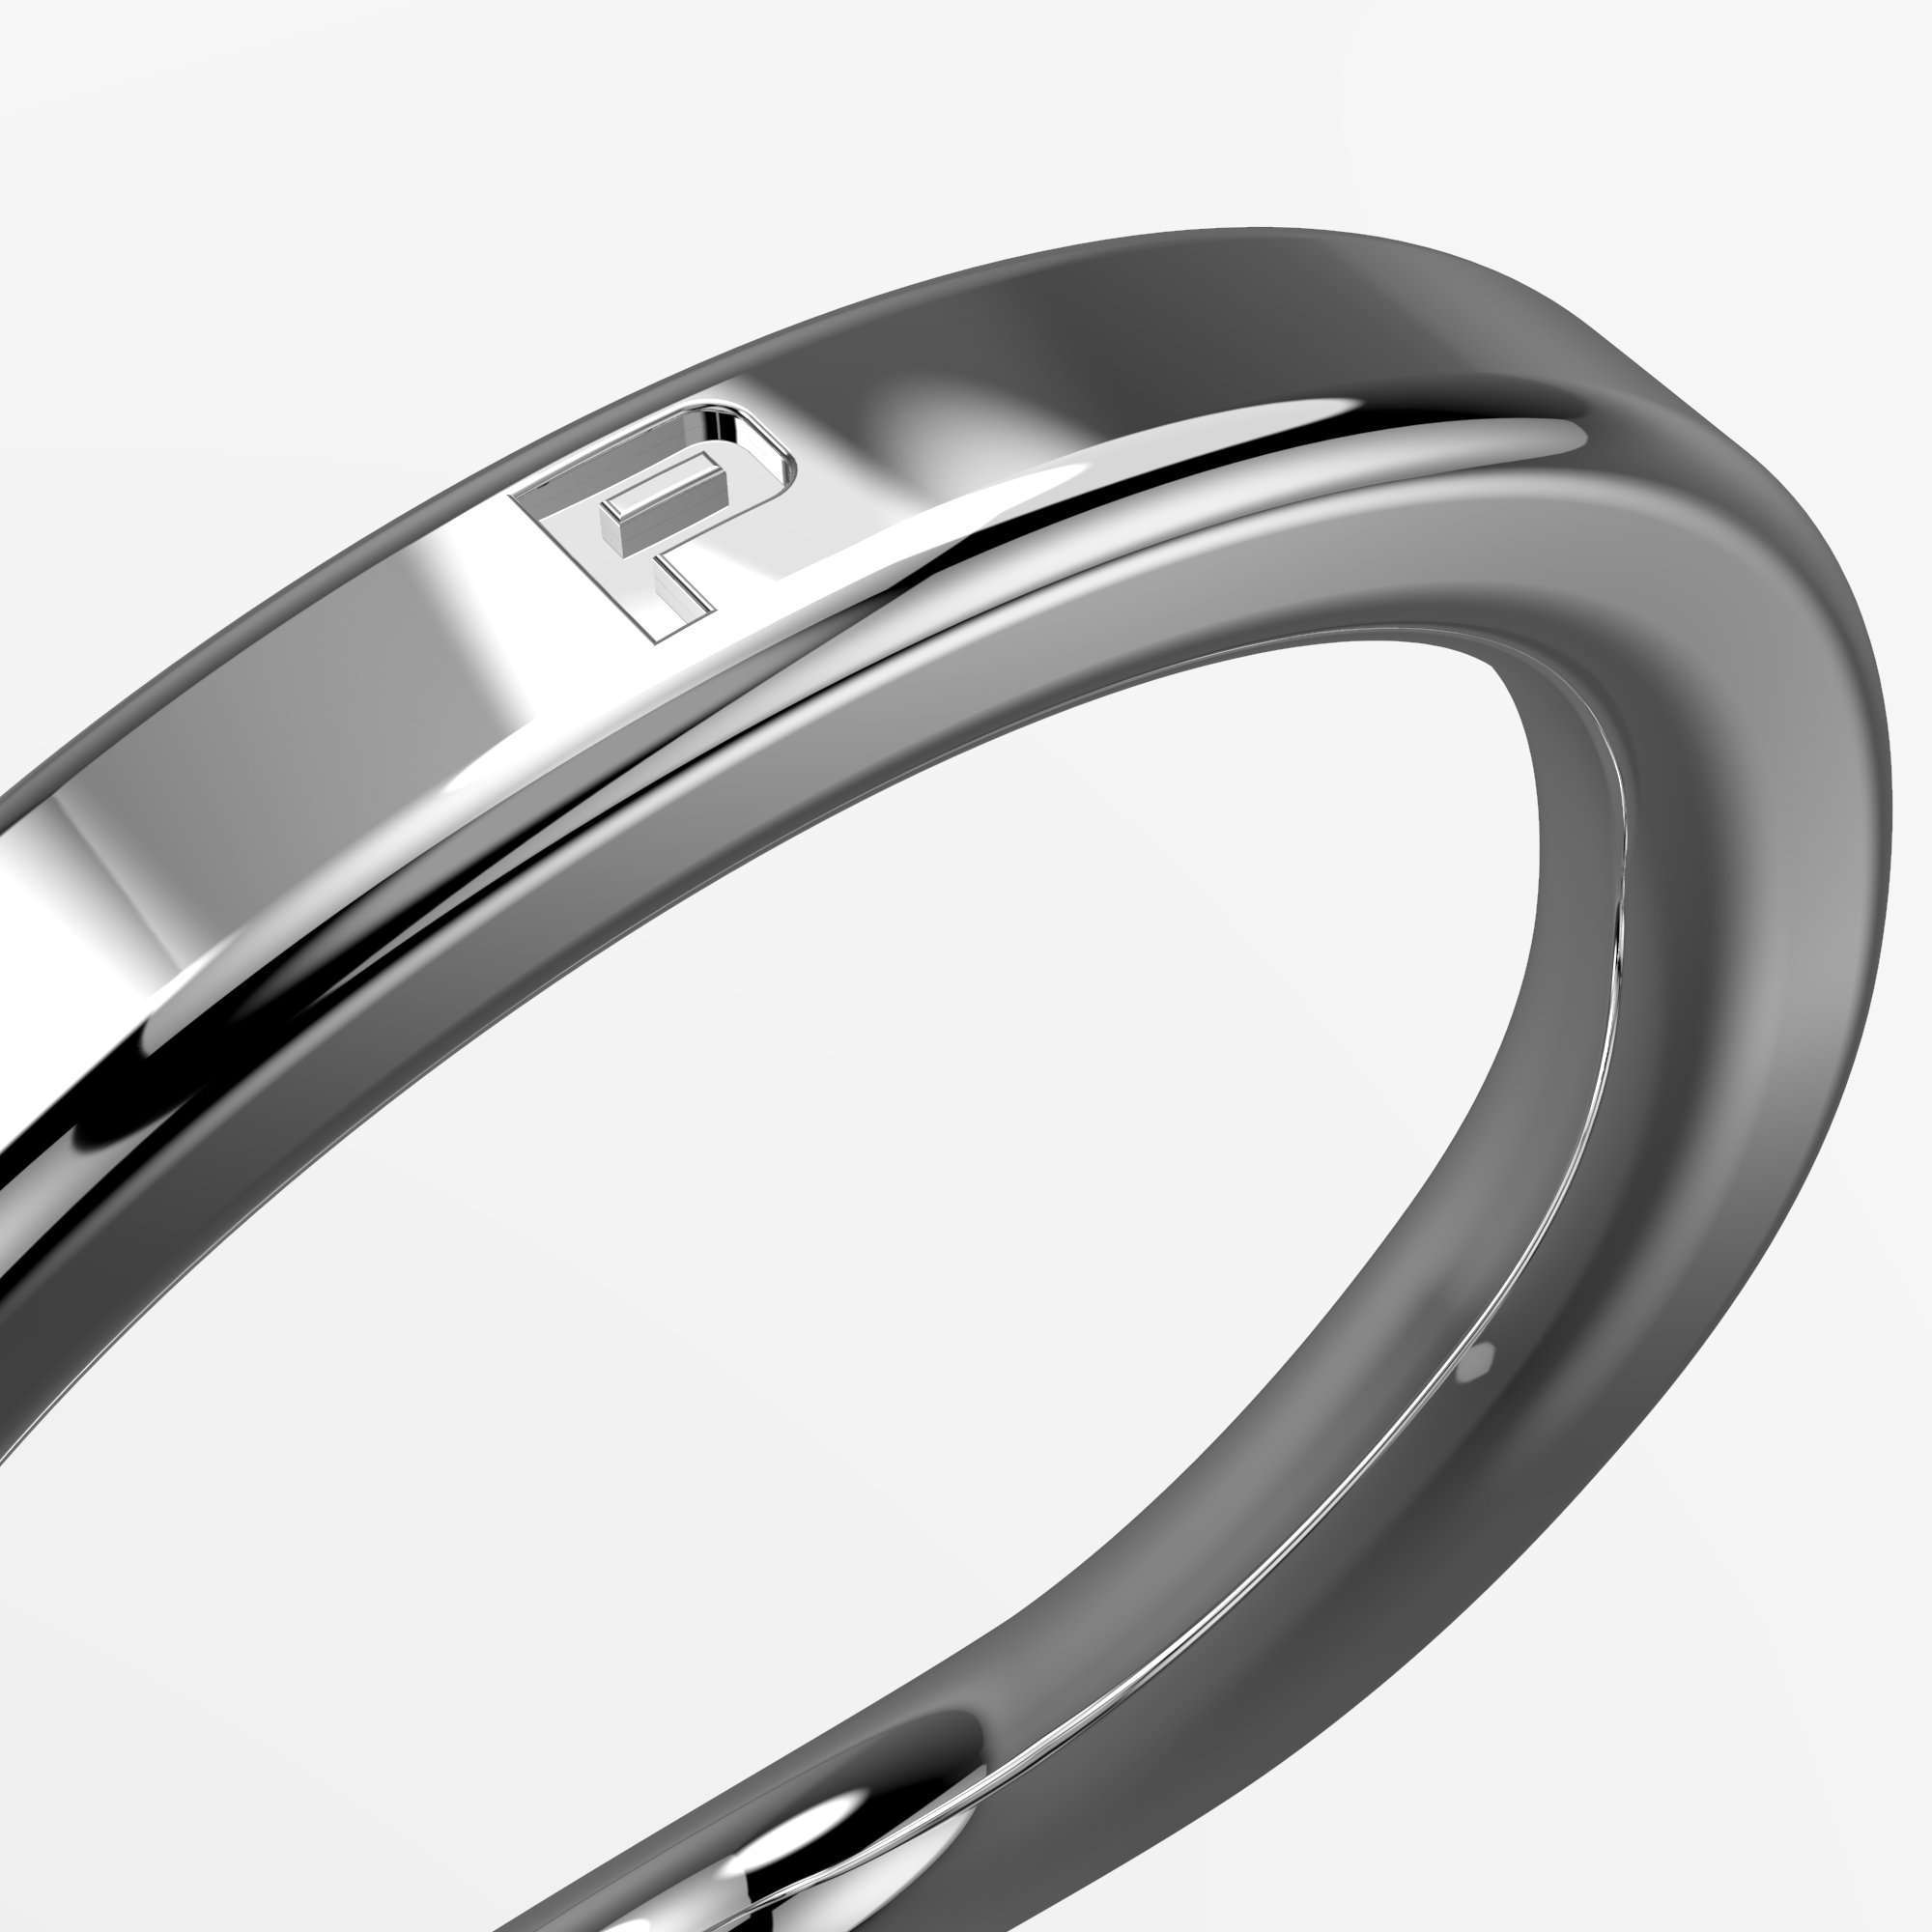 Primal:Spark Stainless Steel Metal Cock Ring – Primal Rings